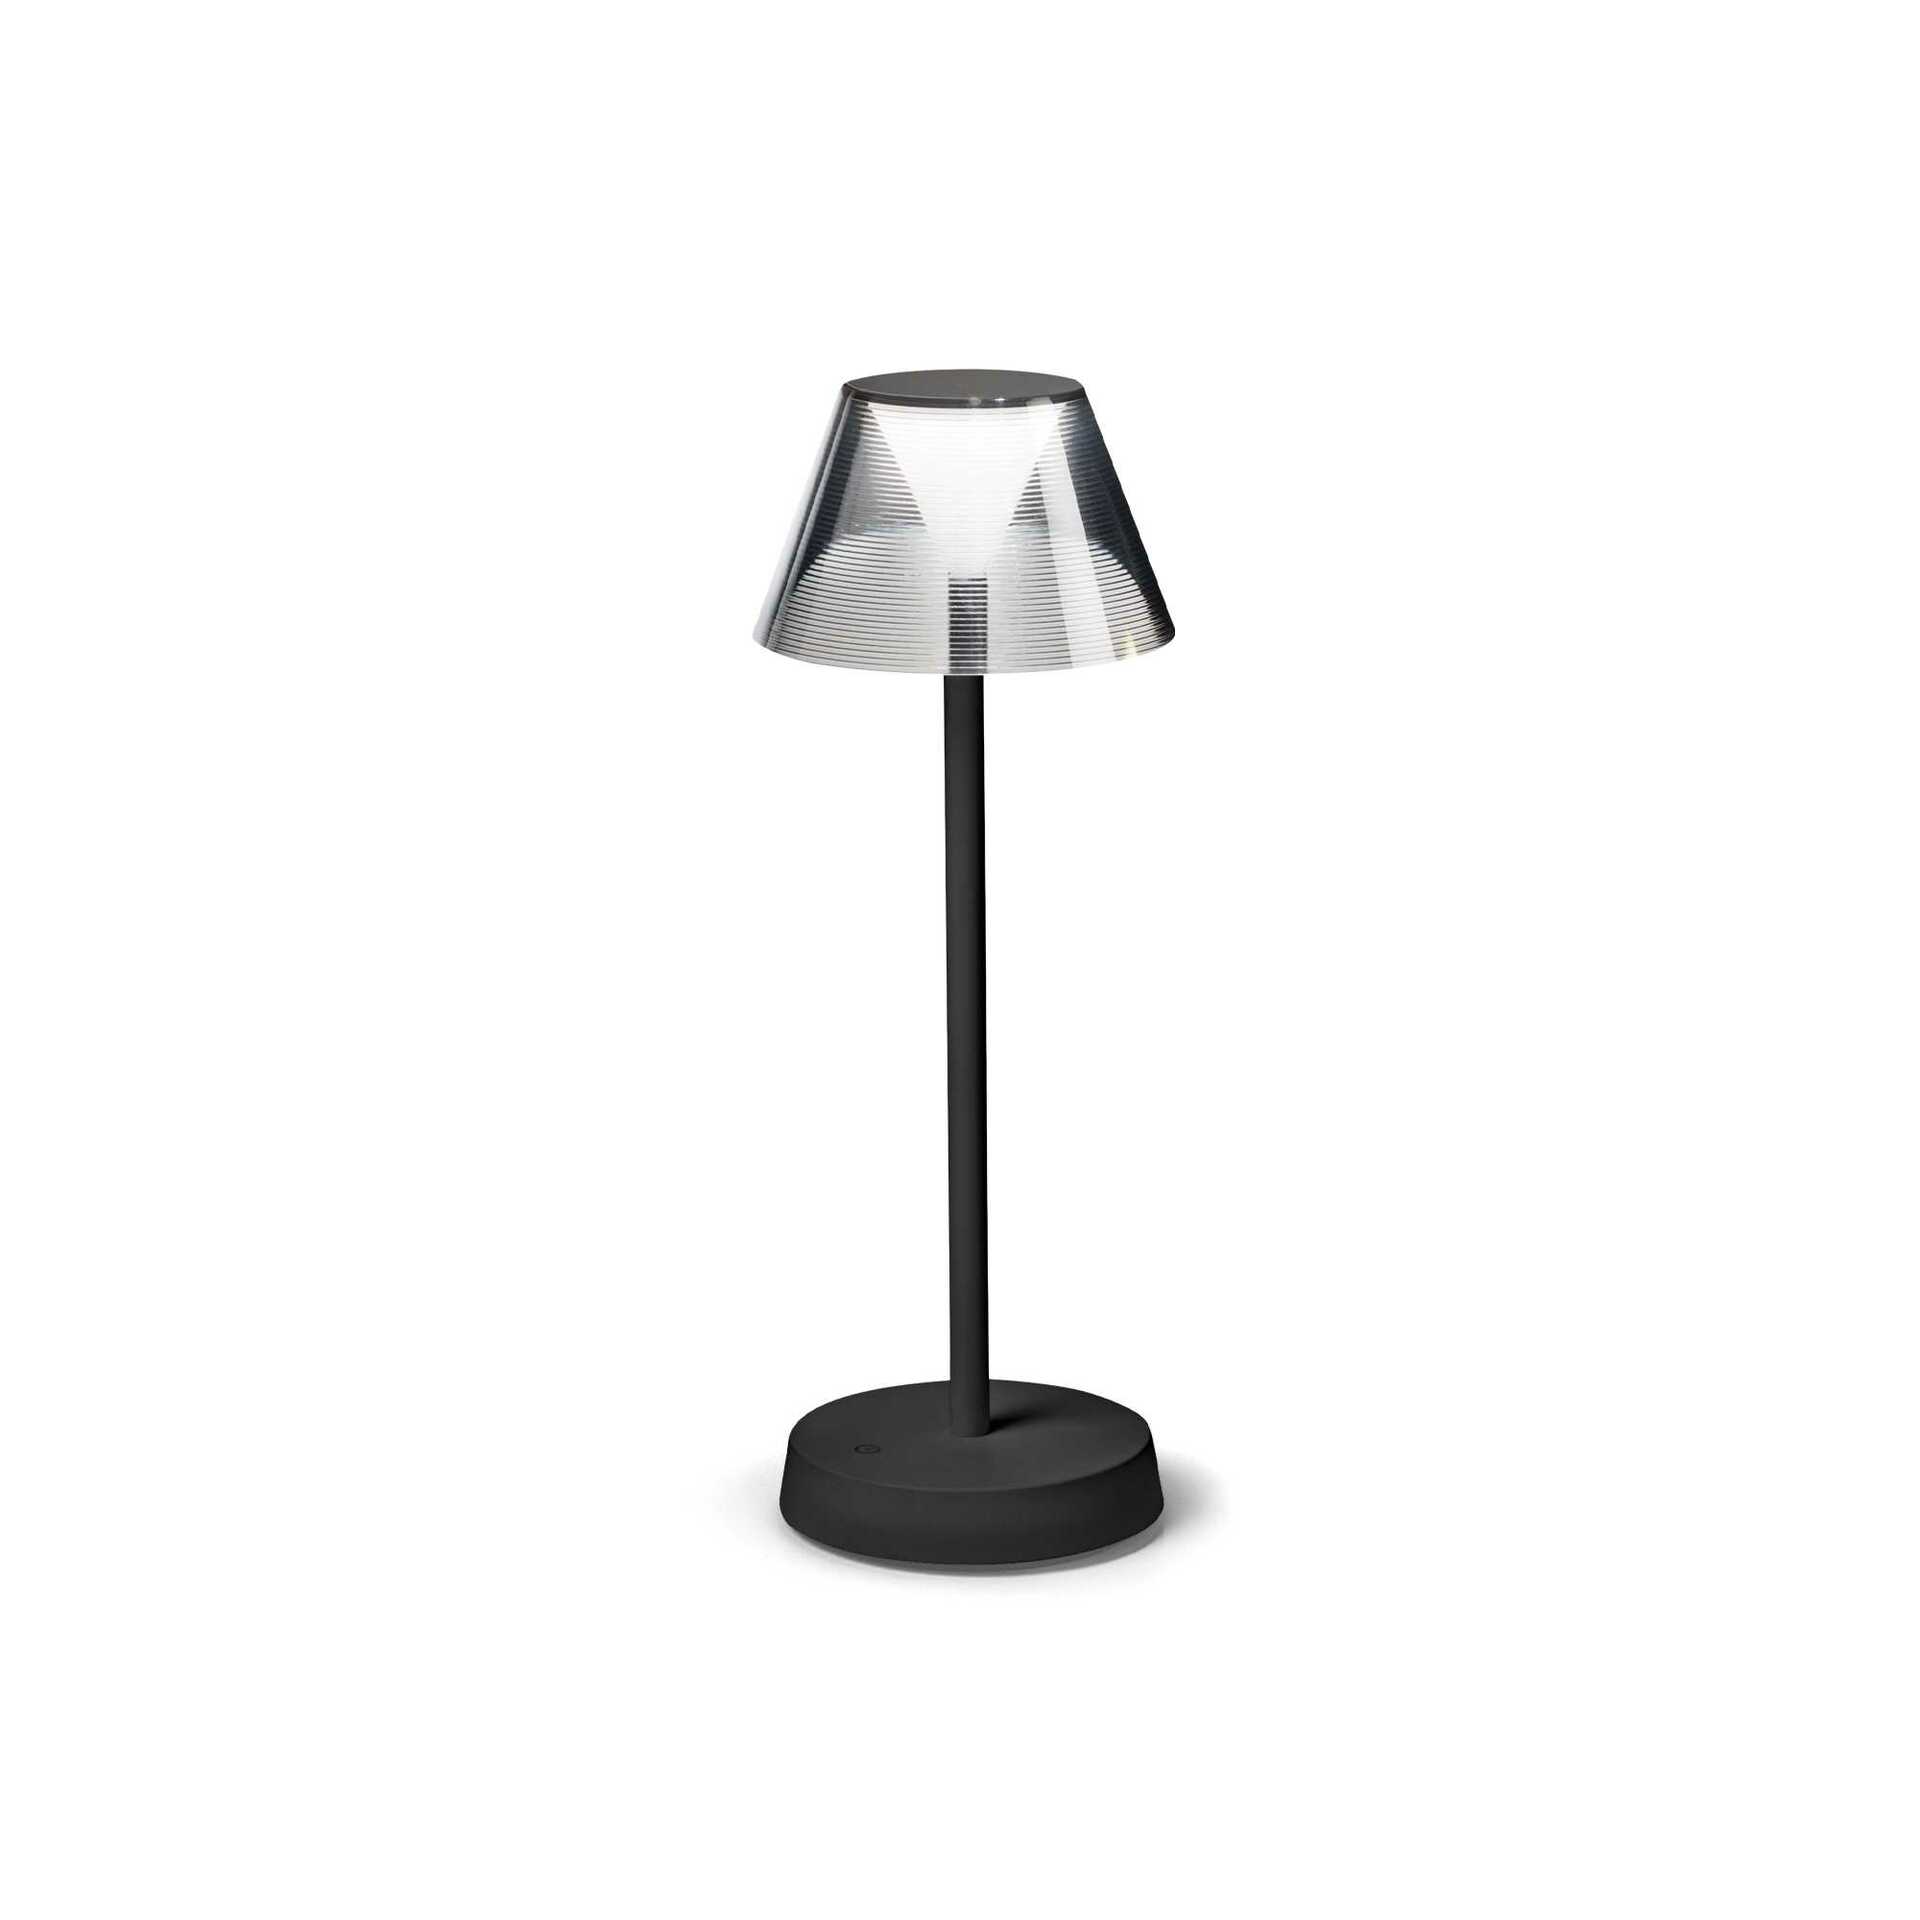 Ideal Lux venkovní stolní lampa Lolita tl 286716